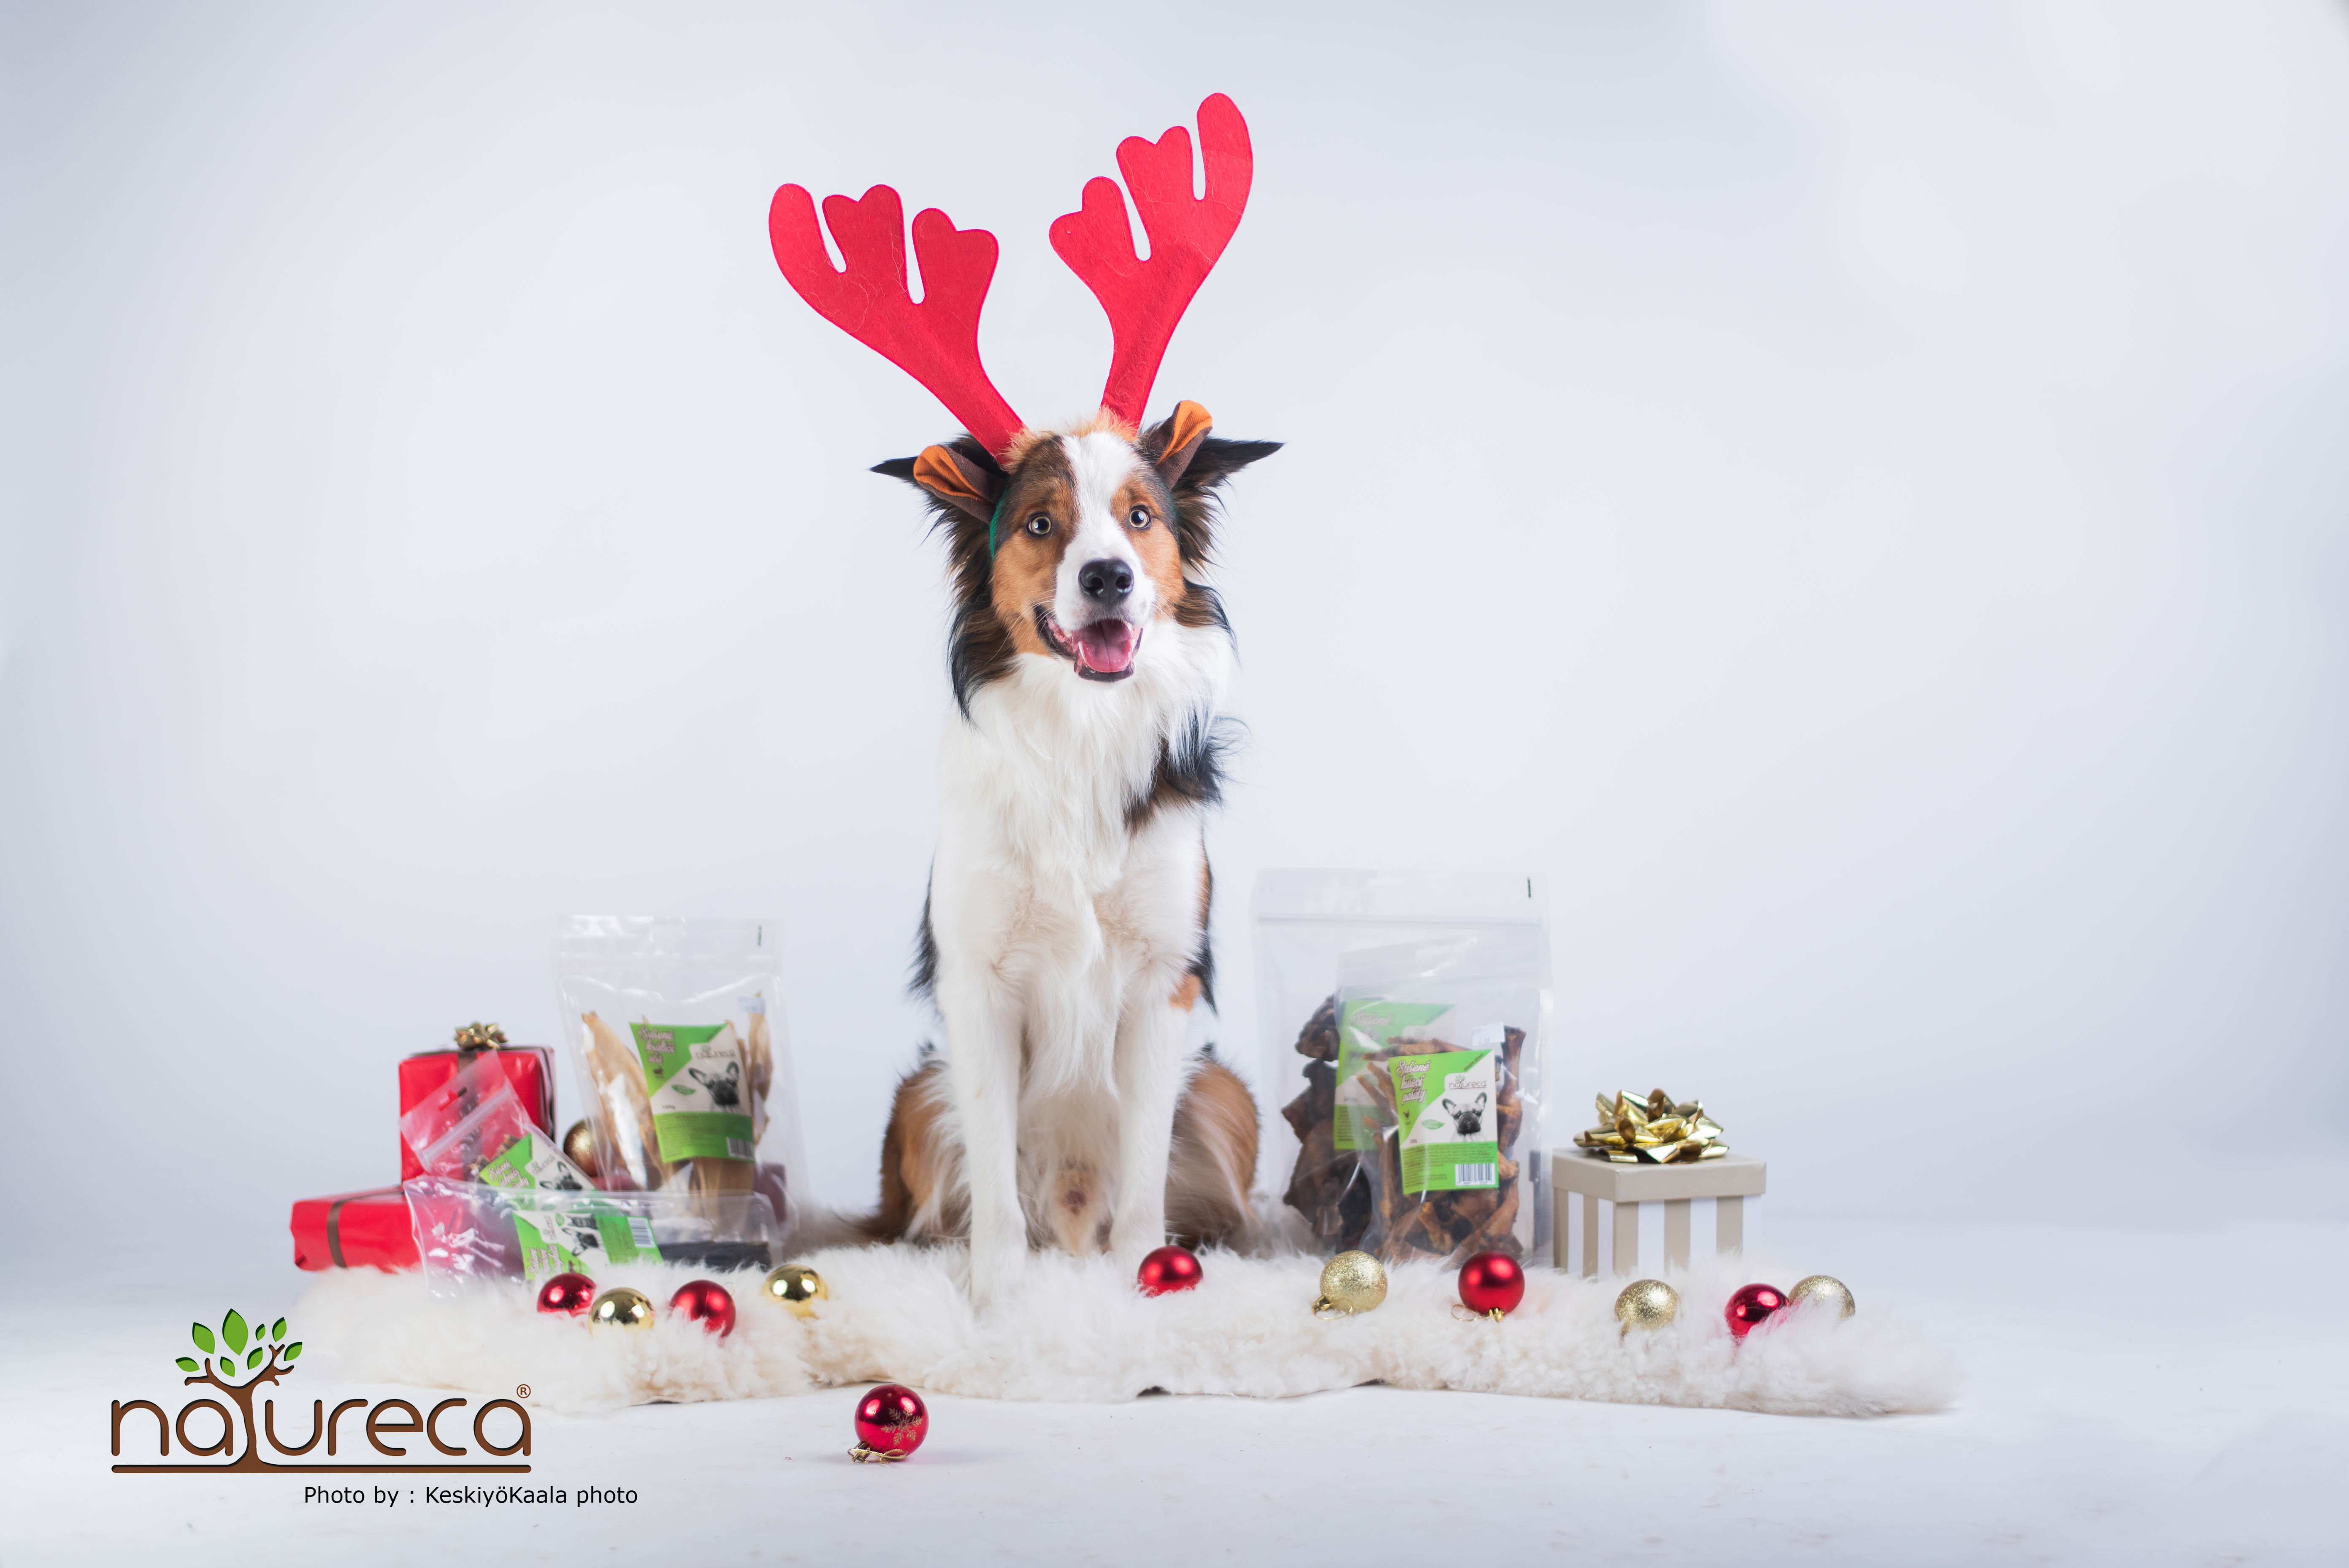 Vánoční DogBox Maxi pro velké psy - 6ks produktů